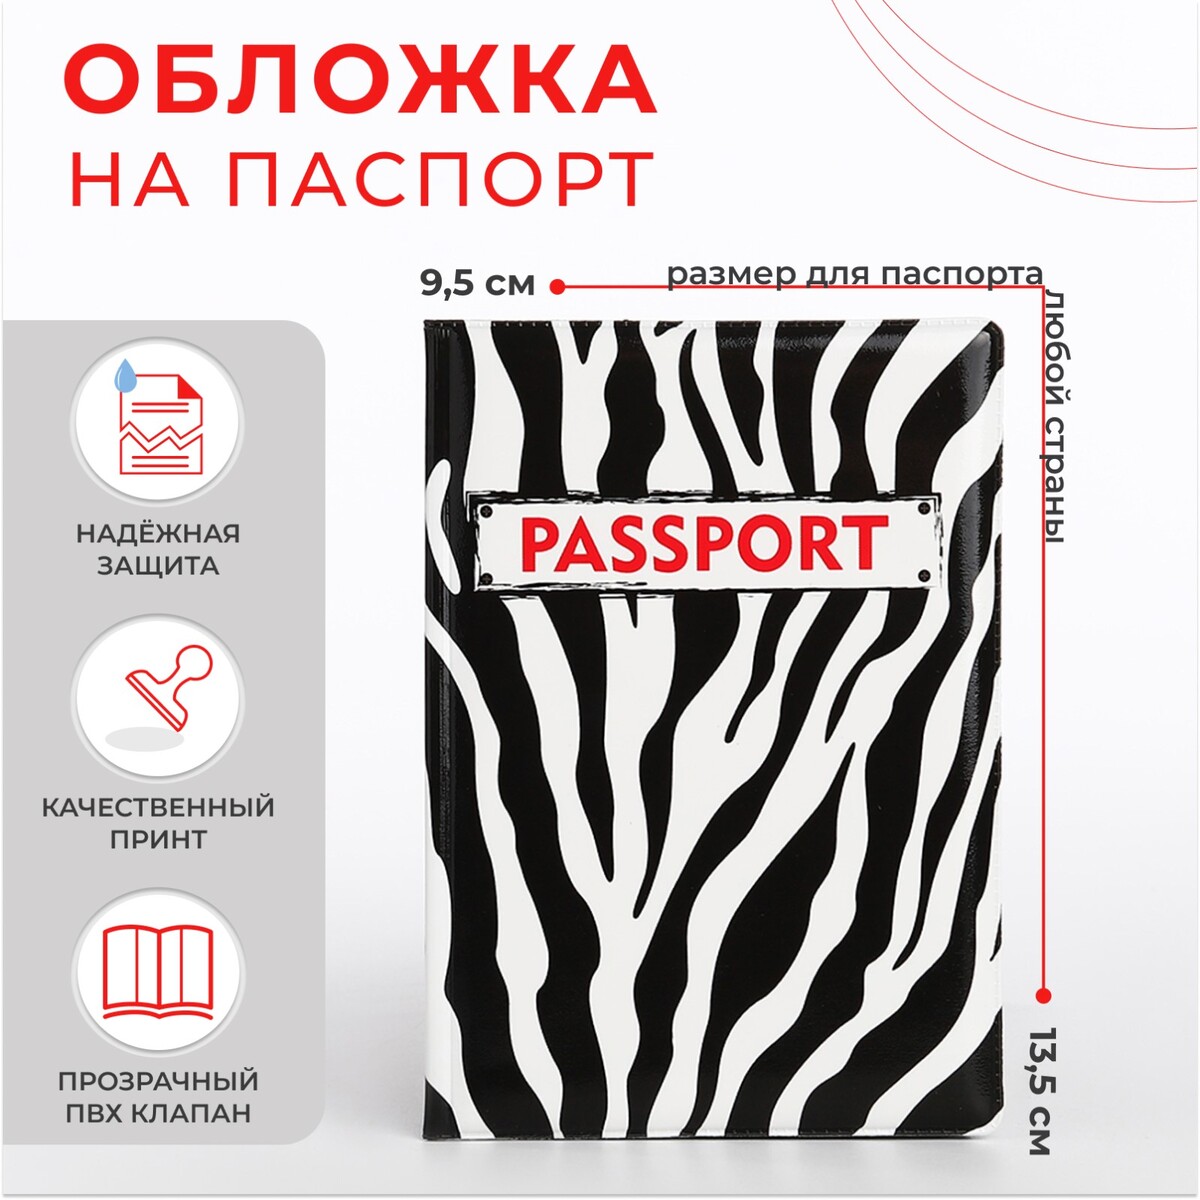 Обложка для паспорта, цвет черный/белый обложка шейкер для паспорта van gogh